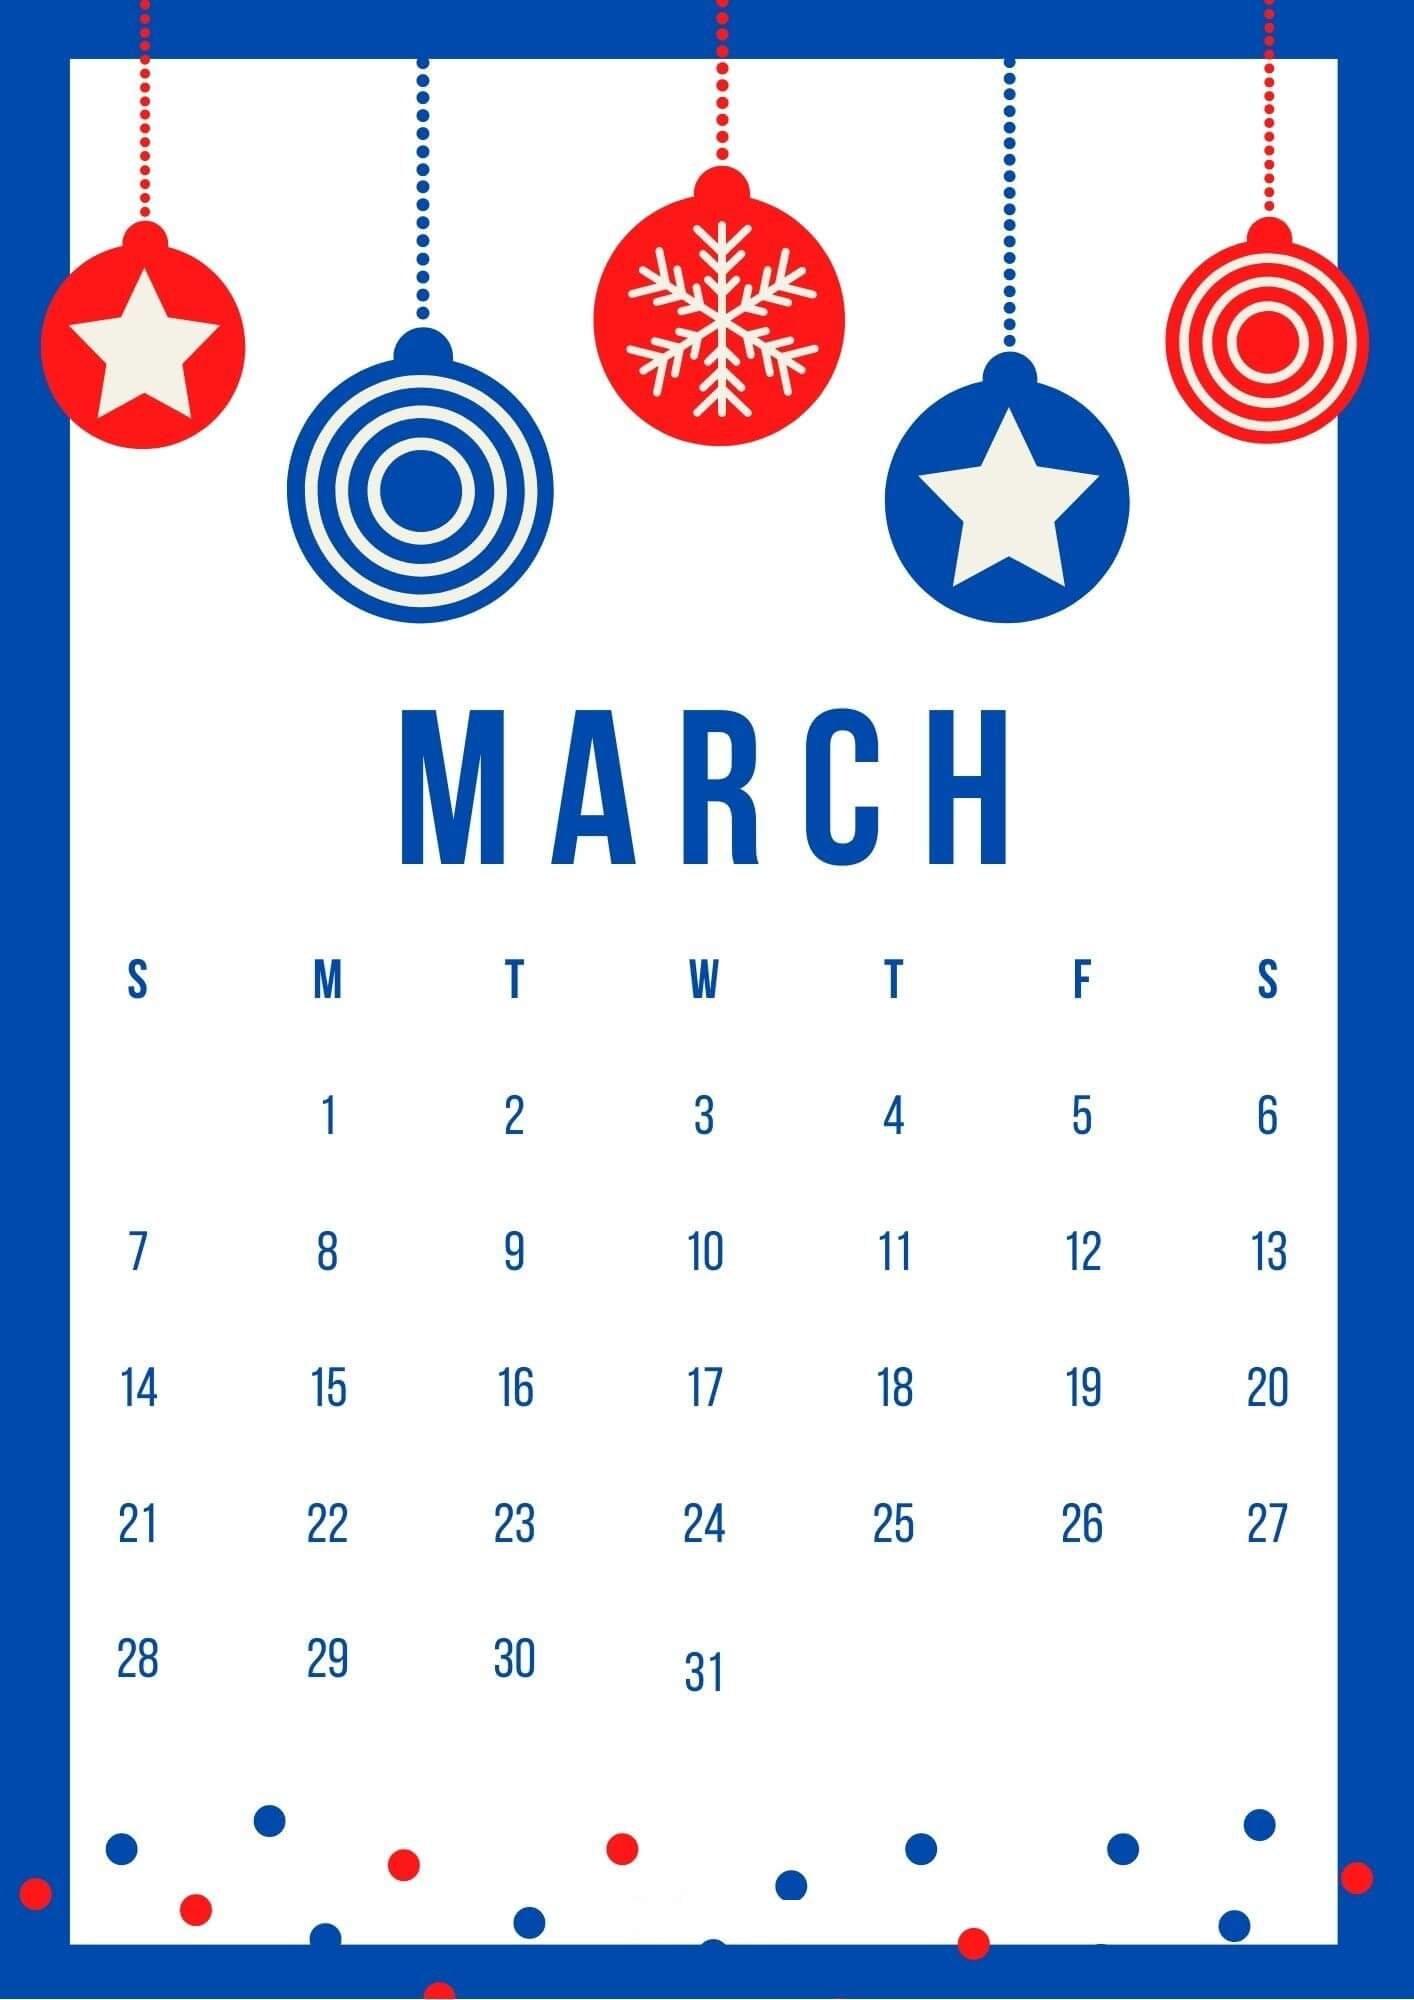 March Calendar Wallpaper 2021 1